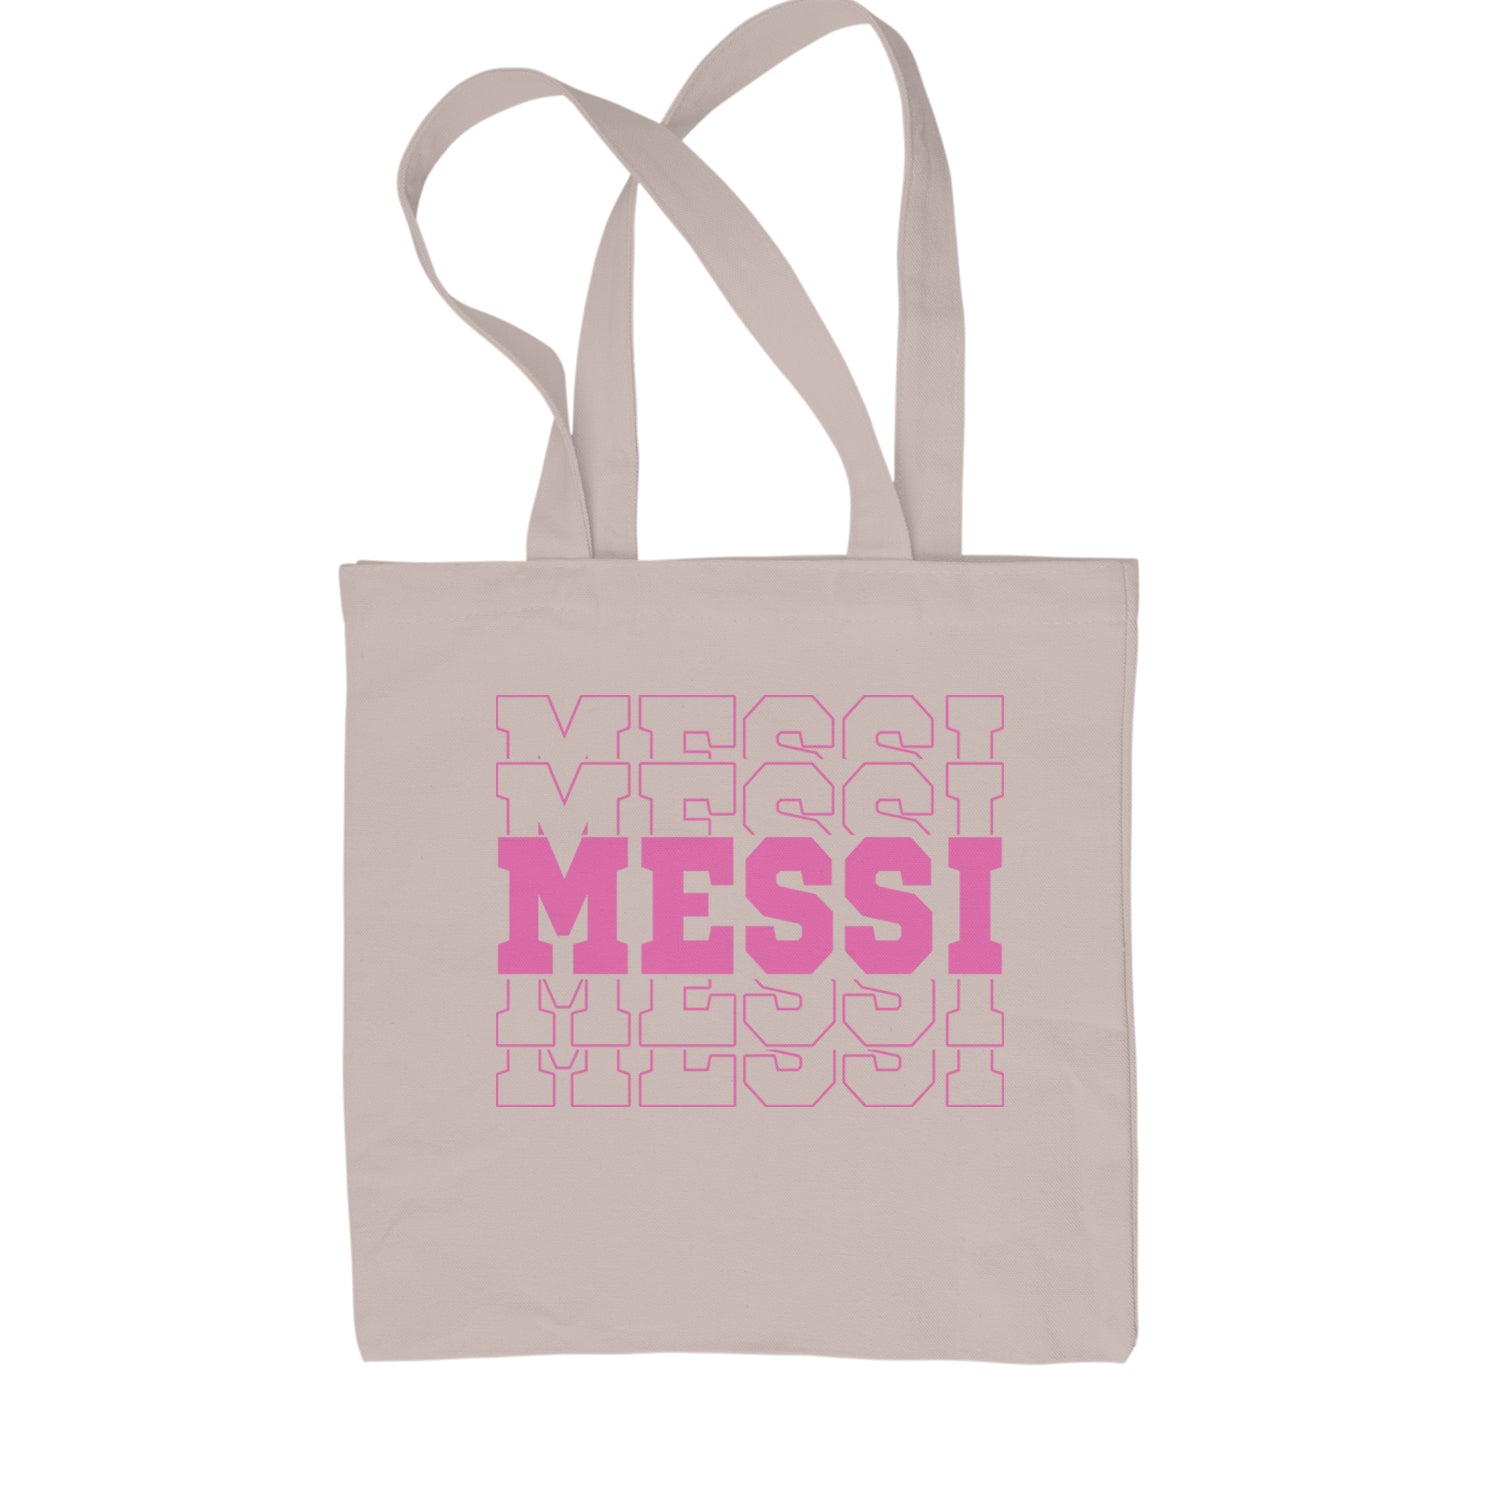 Messi Miami Futbol Shopping Tote Bag